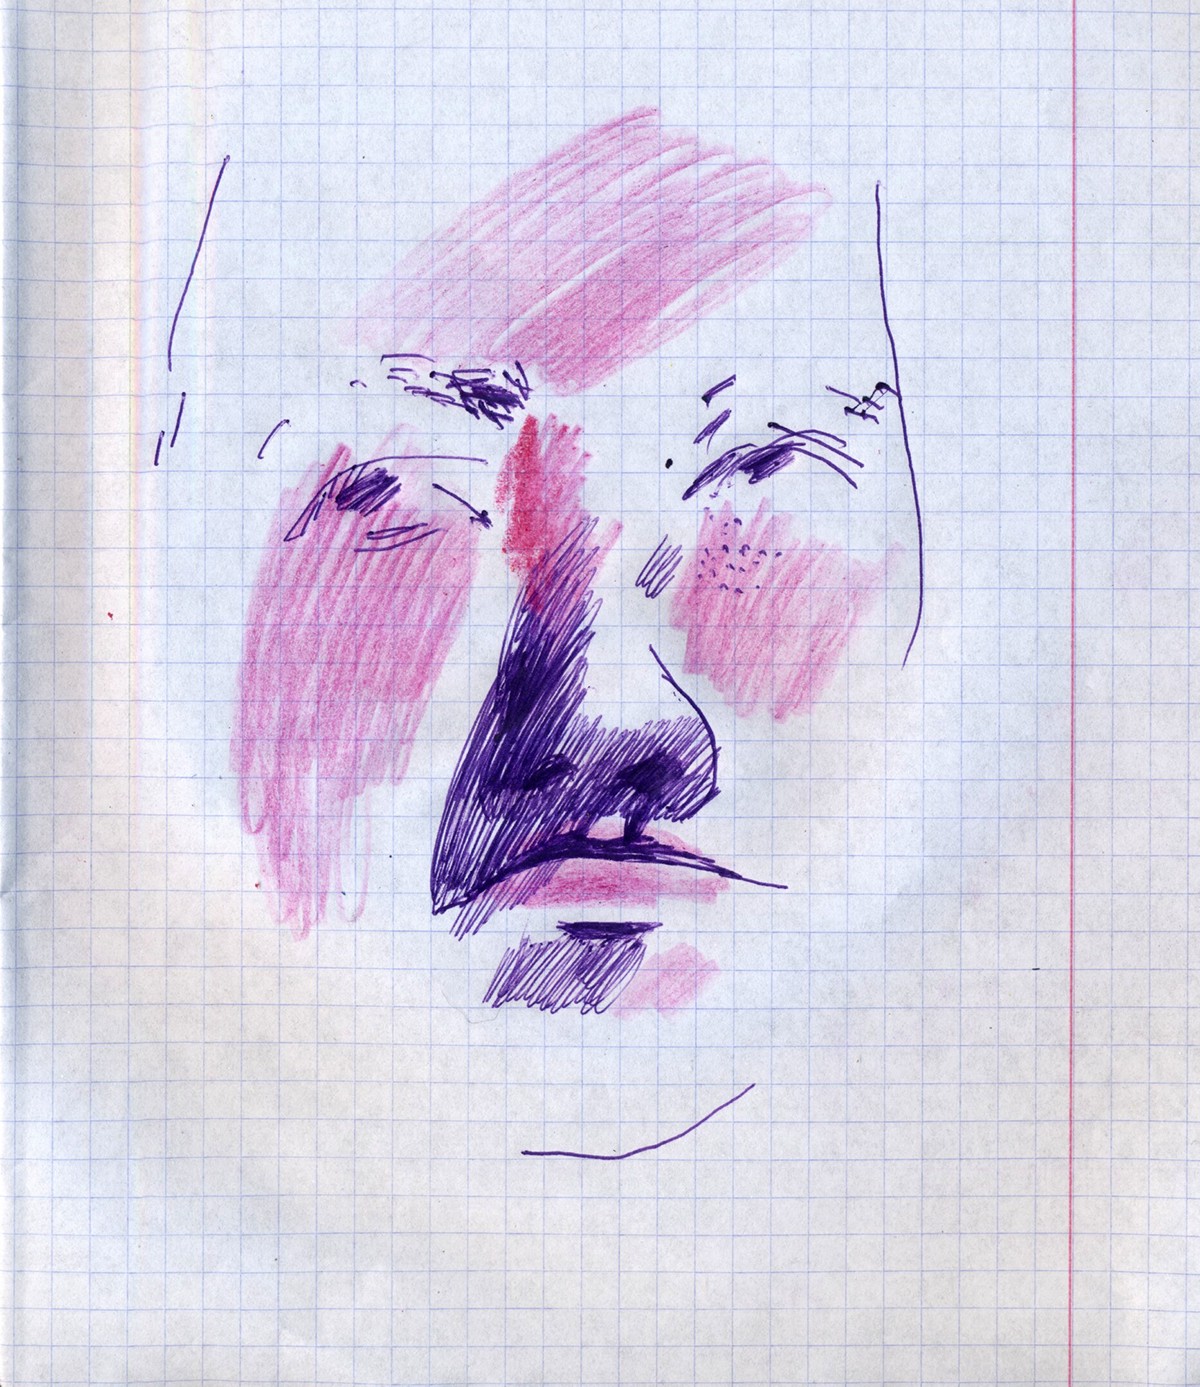 sketch portrait